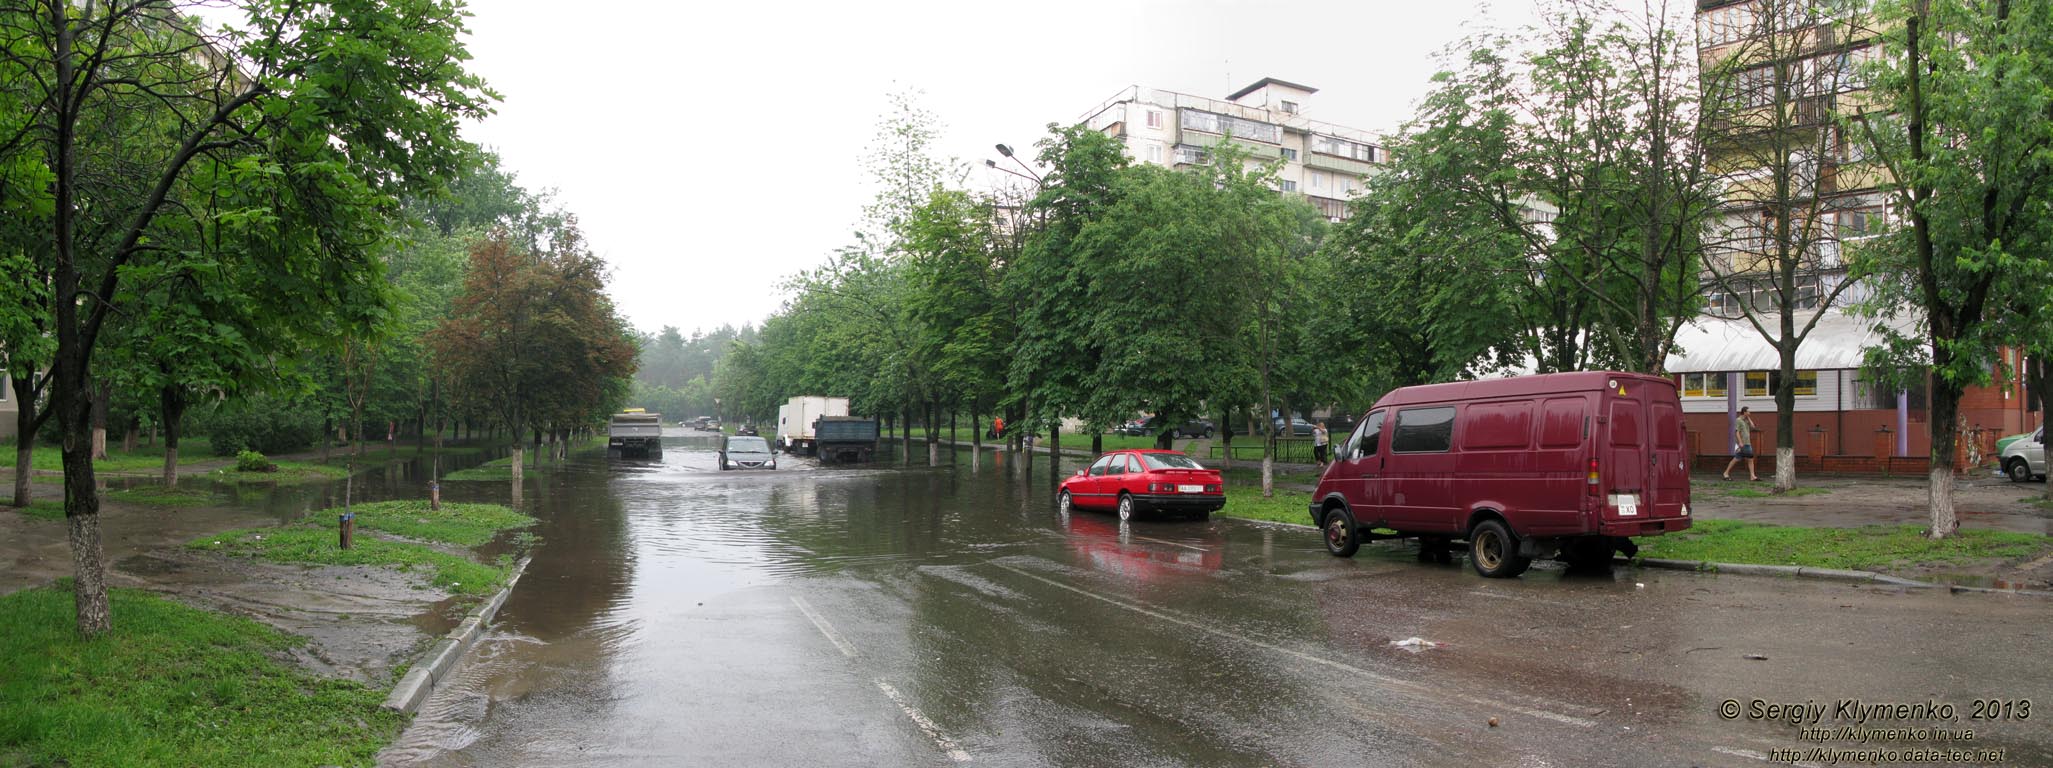 Фото Киева. Затопленная улица академика Курчатова (панорама ~90°), 8 июня 2013 года. Машины форсируют водное препятствие посреди улицы.